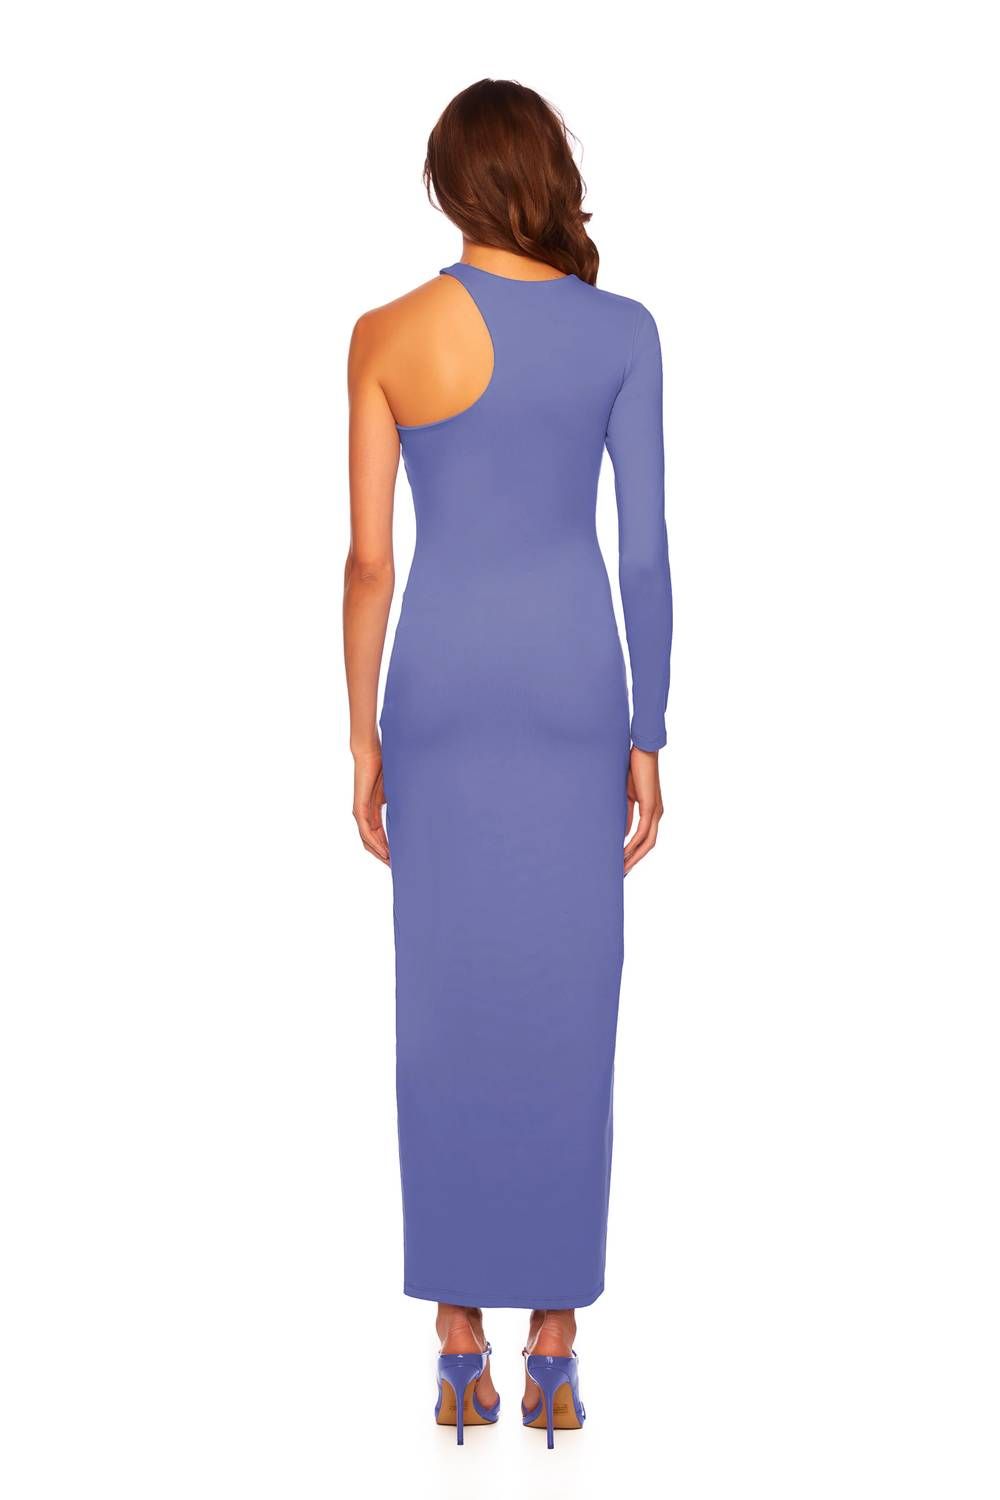 Style 1-2293391891-2901 Susana Monaco Size M Purple Side Slit Dress on Queenly